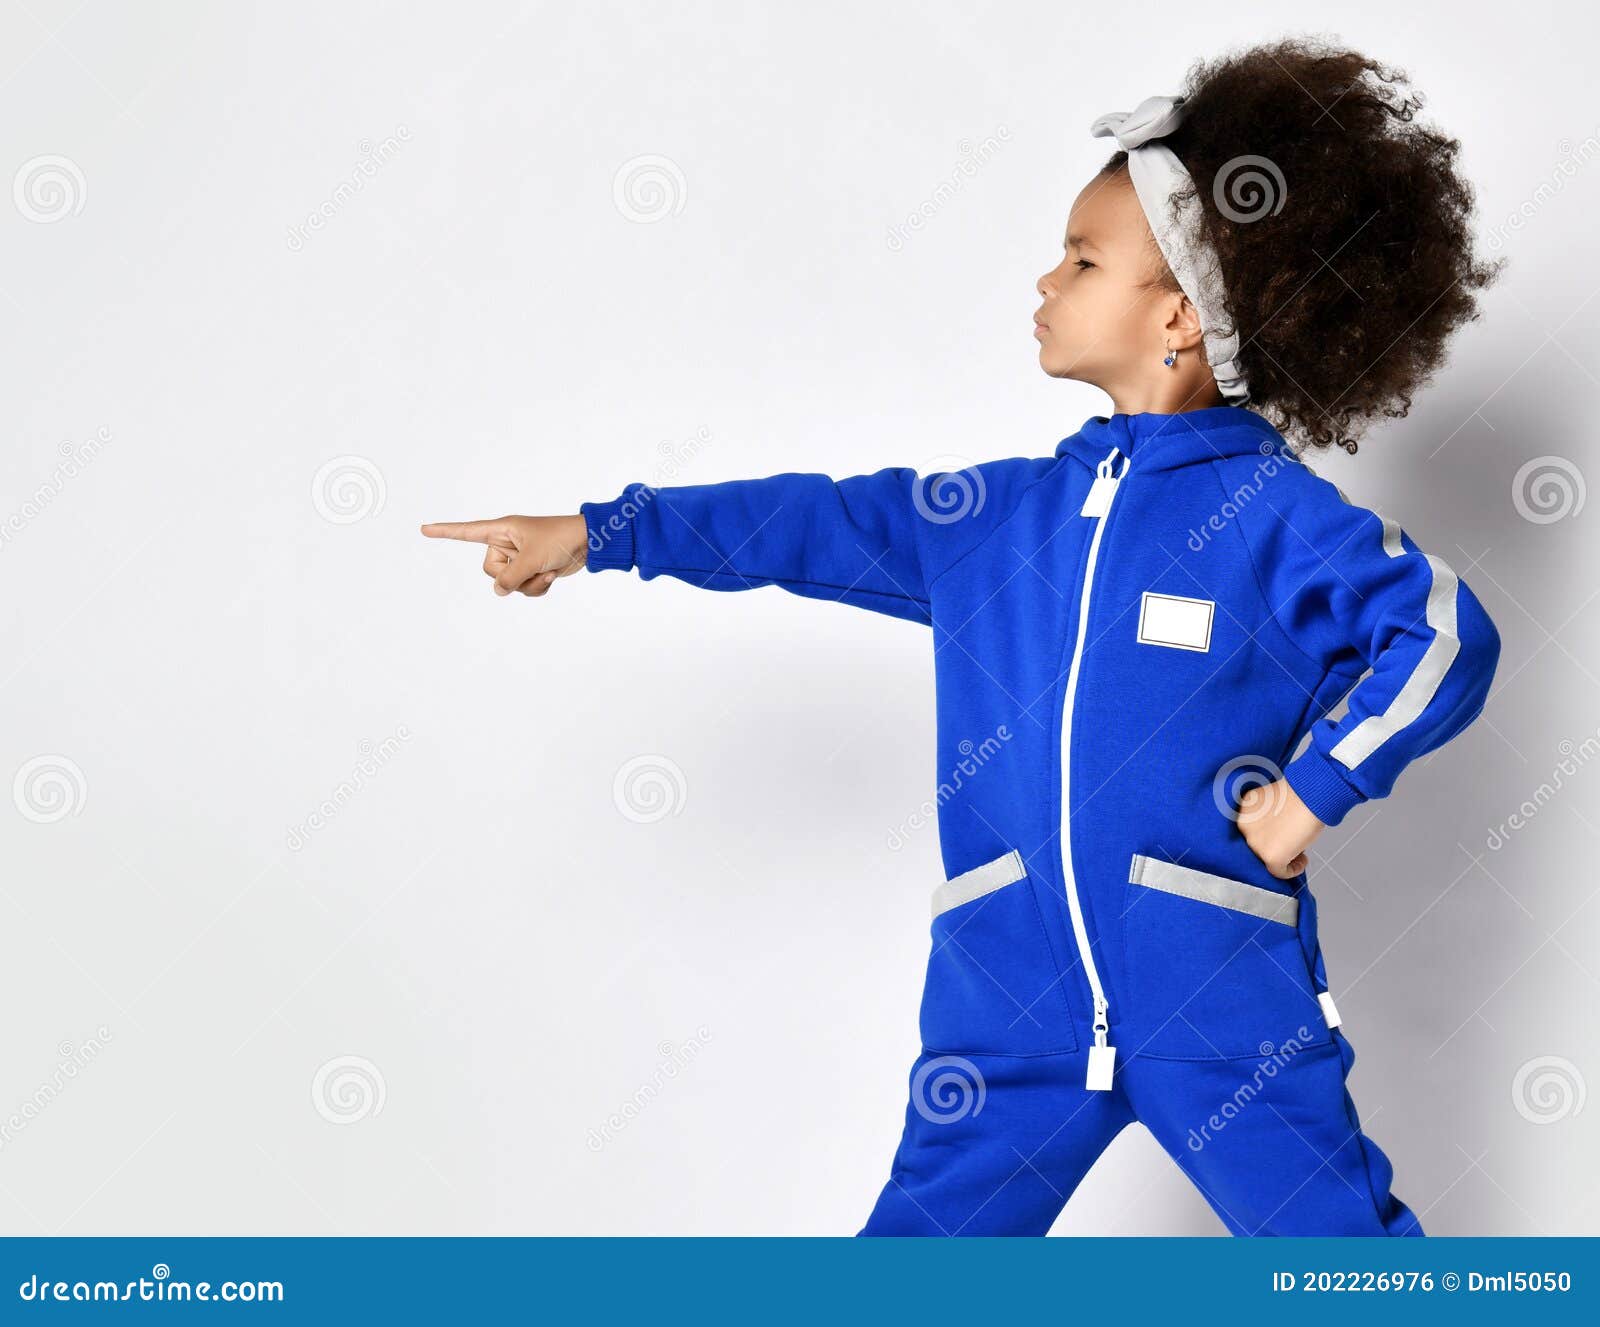 χαριτωμένη κοπέλα με κατσαρό μουστάκι αφρικανή με αναπαυτική μπλε αθλητική  στολή και κορδέλα μαλλιών που στέκονται και δείχνουν στ Στοκ Εικόνες -  εικόνα από lifestyle, childhood: 202226976